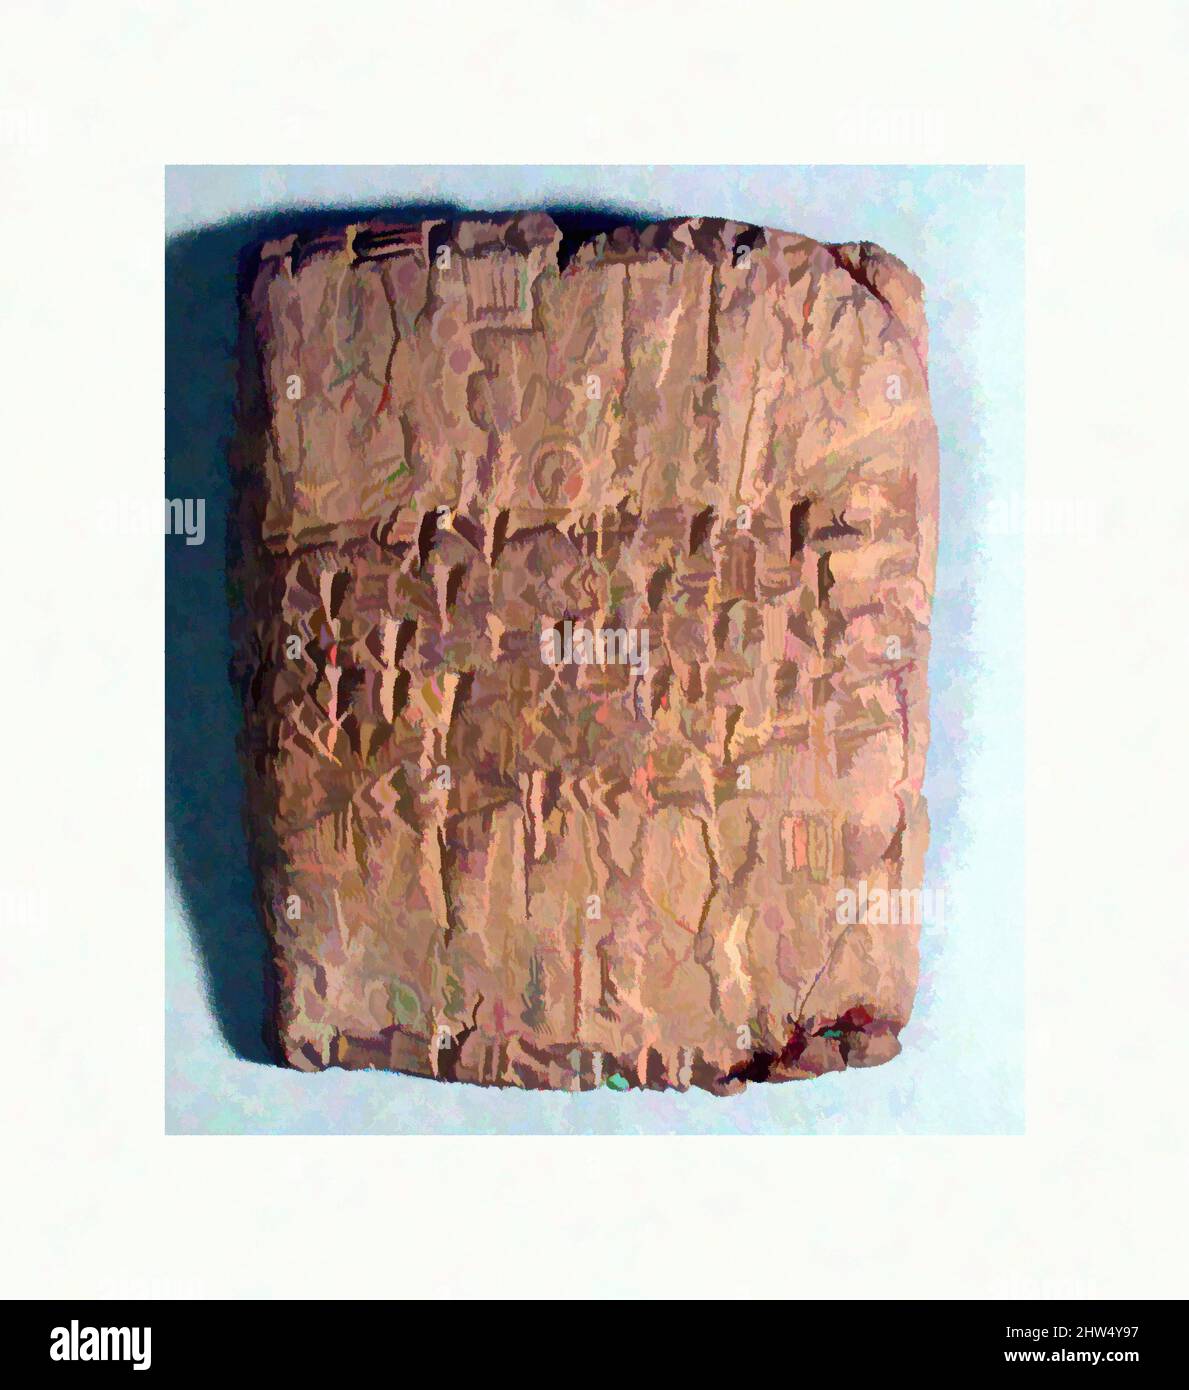 Arte ispirata dal caso di tavoletta Cuneiform impressionato con due guarnizioni di cilindro, età del Bronzo Medio-Old Assyrian Trading Colony, ca. 20th–19th secolo a.C., Anatolia, probabilmente di Kültepe (Karum Kanesh), Old Assyrian Trading Colony, Clay, 6,6 x 5,4 x 1,5 cm (2 5/8 x 2 1/8 x 5/8 pollici), Clay-, opere classiche modernizzate da Artotop con un tuffo di modernità. Forme, colore e valore, impatto visivo accattivante sulle emozioni artistiche attraverso la libertà delle opere d'arte in modo contemporaneo. Un messaggio senza tempo che persegue una nuova direzione selvaggiamente creativa. Artisti che si rivolgono al supporto digitale e creano l'NFT Artotop Foto Stock